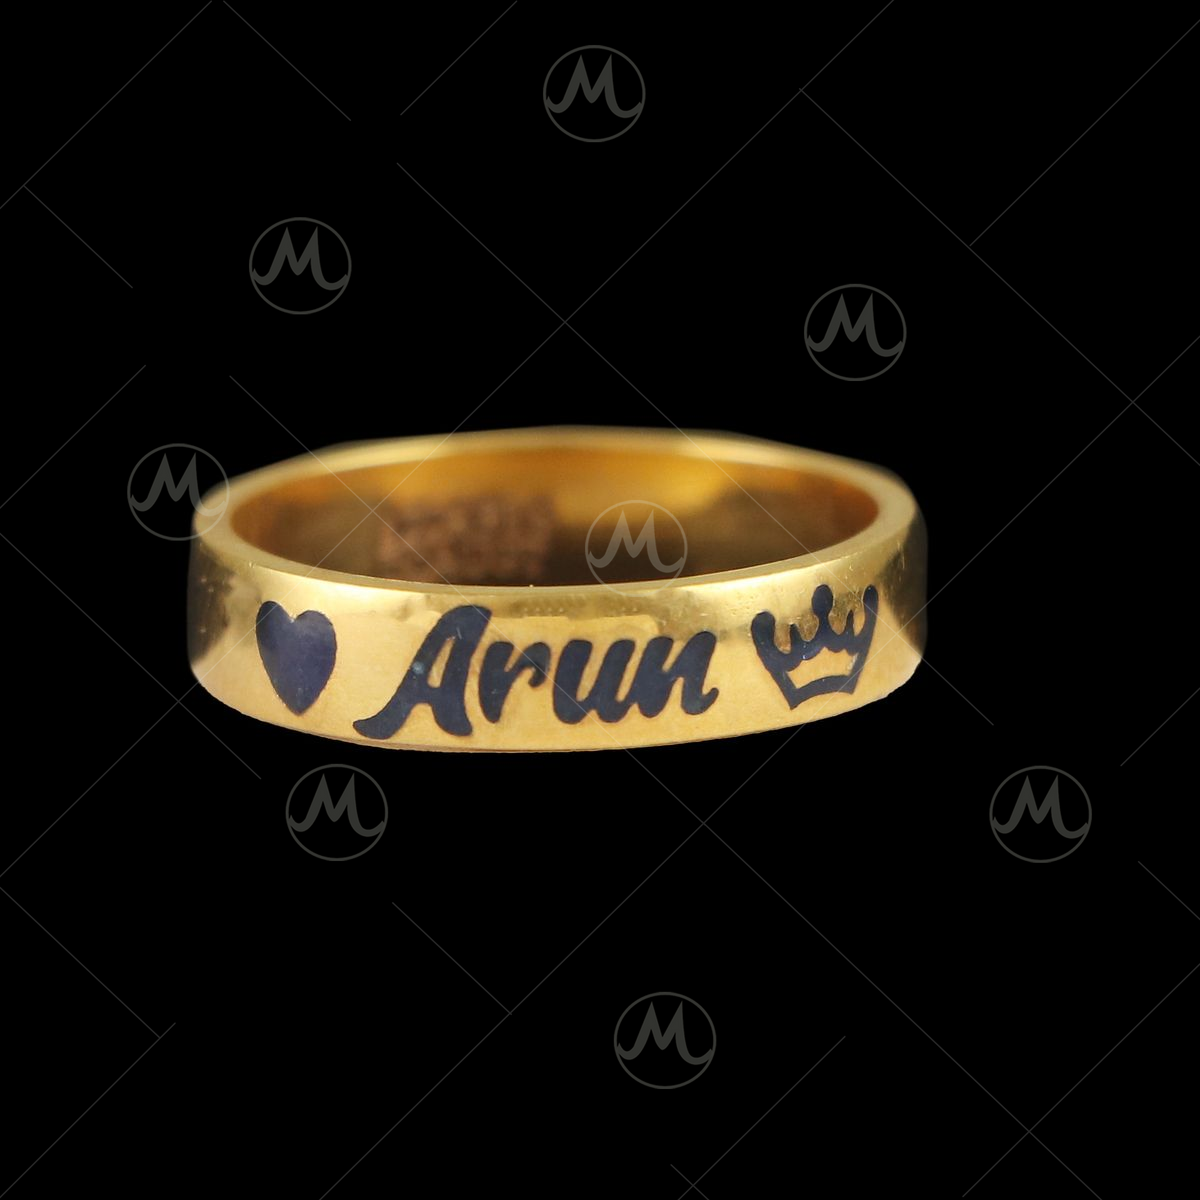 Armenian Name Ring | Armenian rings